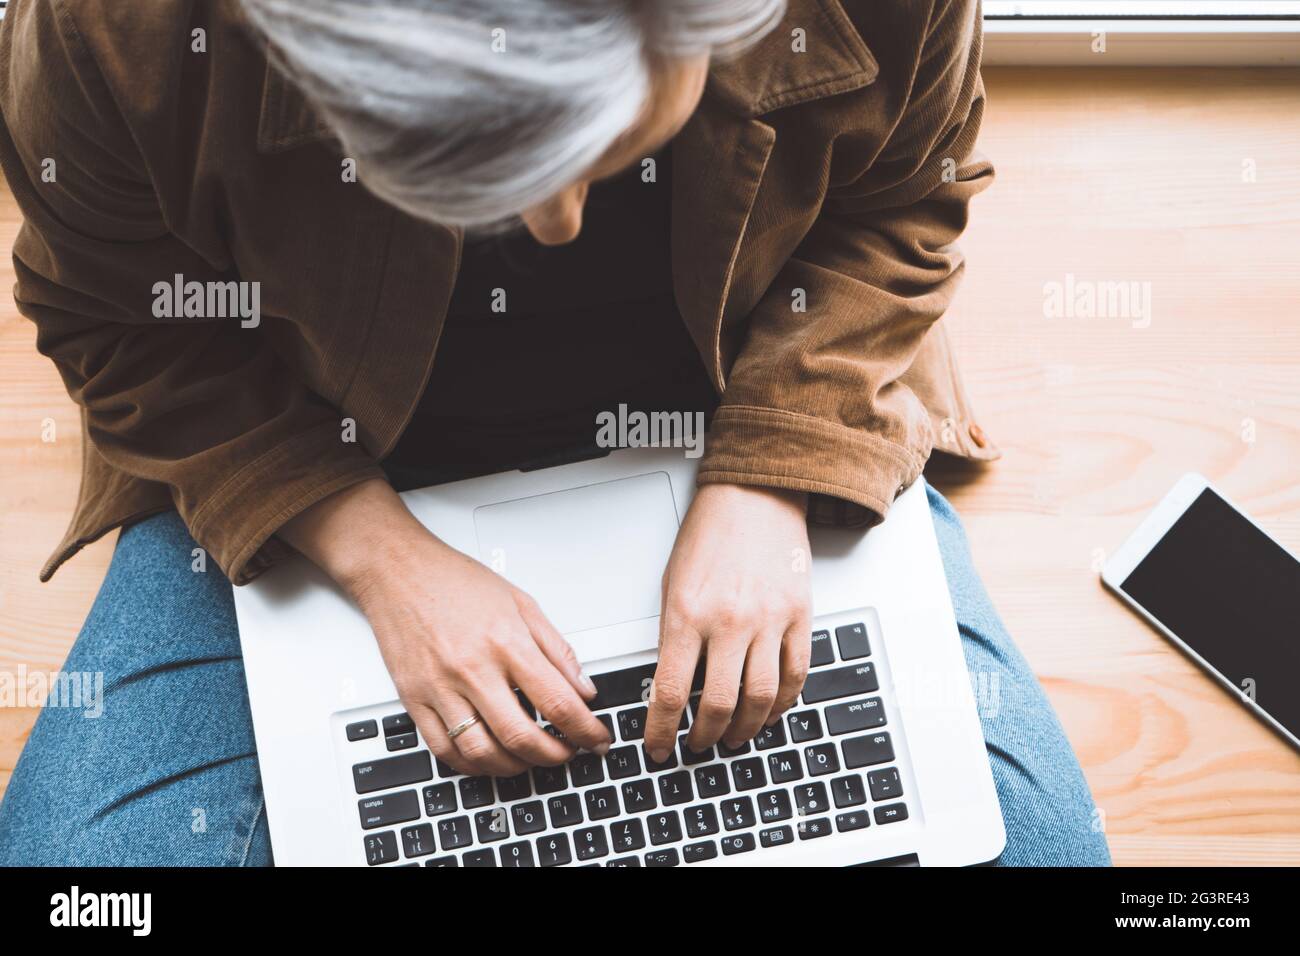 Femme grise tapée clavier d'ordinateur portable assise sur un rebord de fenêtre en bois avec téléphone mobile dessus. Vue de dessus. Accent sélectif sur la fema Banque D'Images